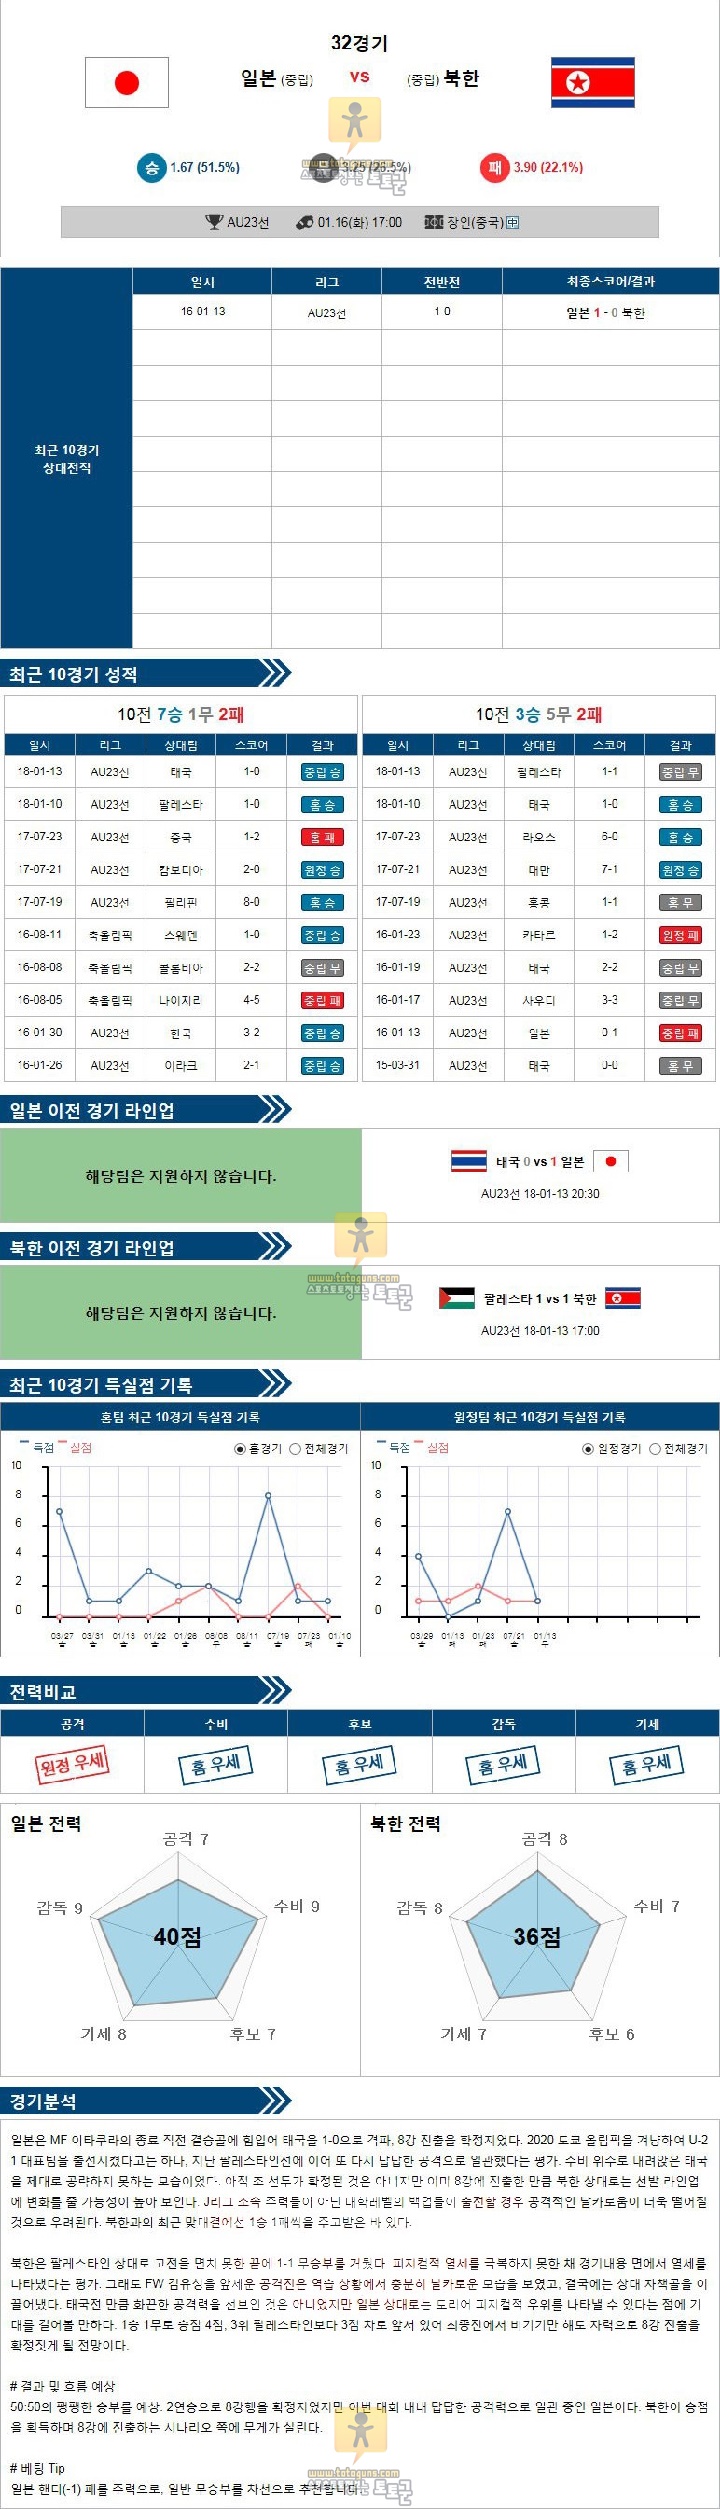 [AU23 챔피언쉽] 1월 16일 17:00 축구분석 일본 vs 북한